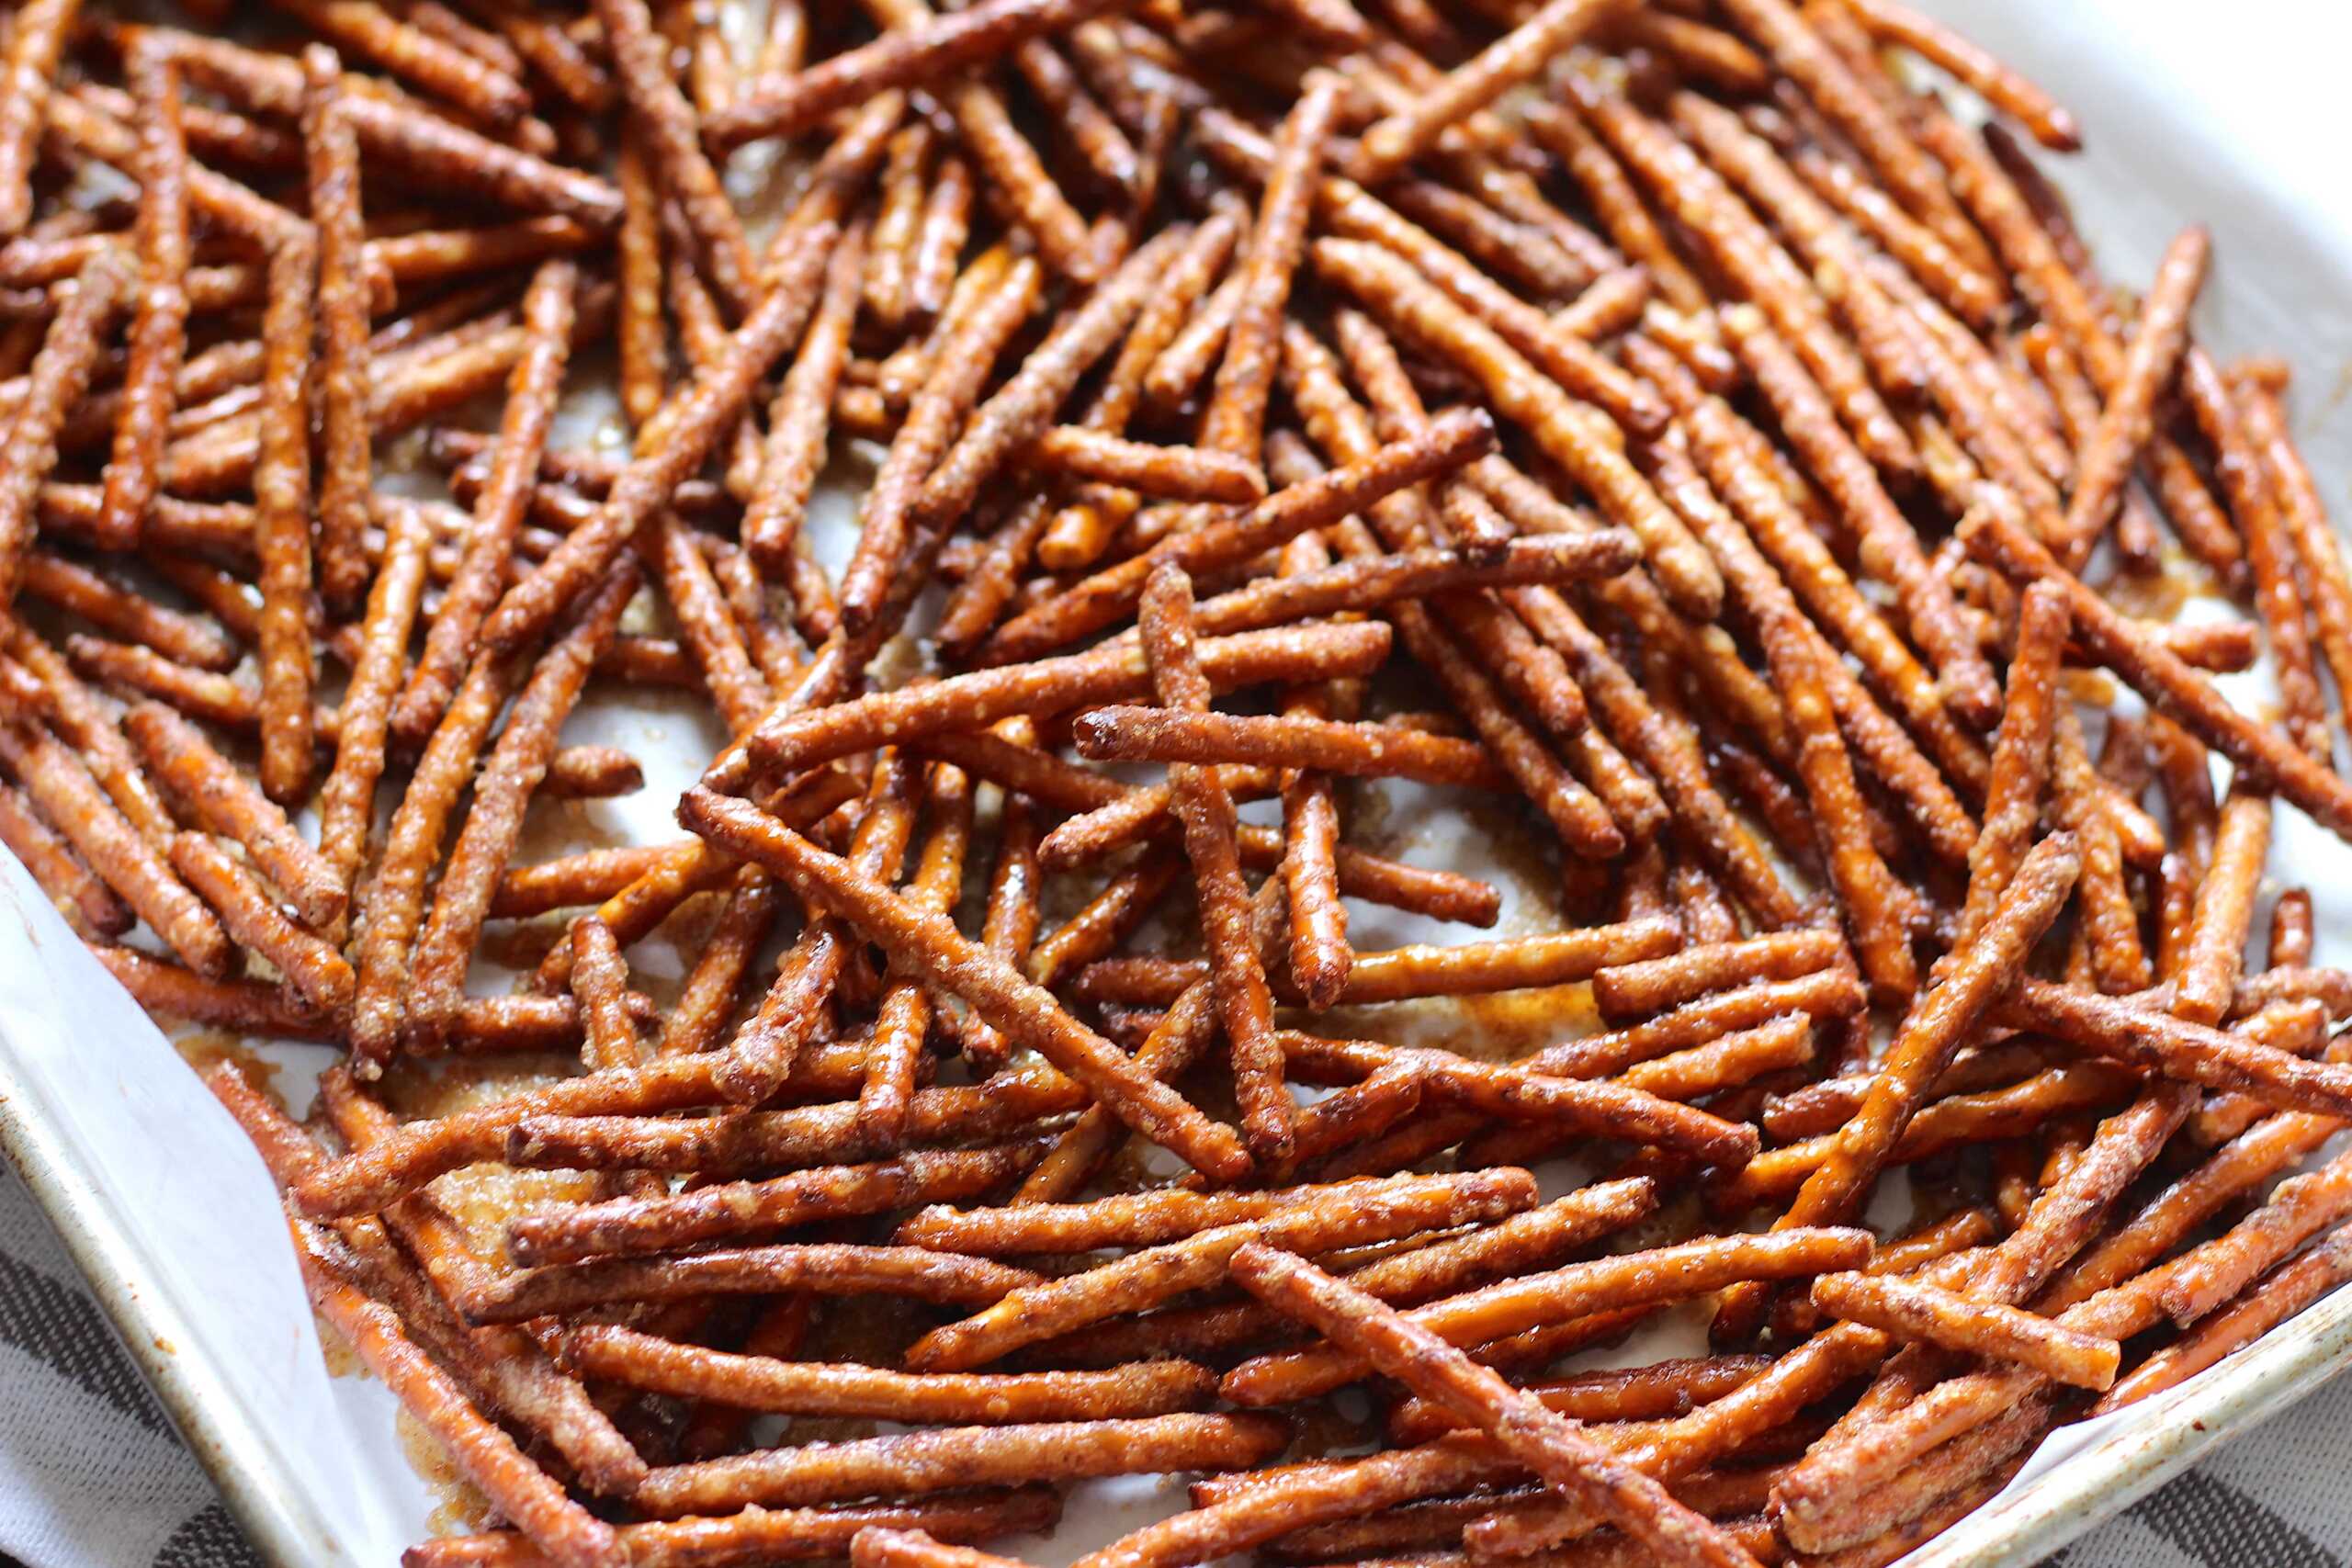 Cinnamon Sugar Pretzel Sticks